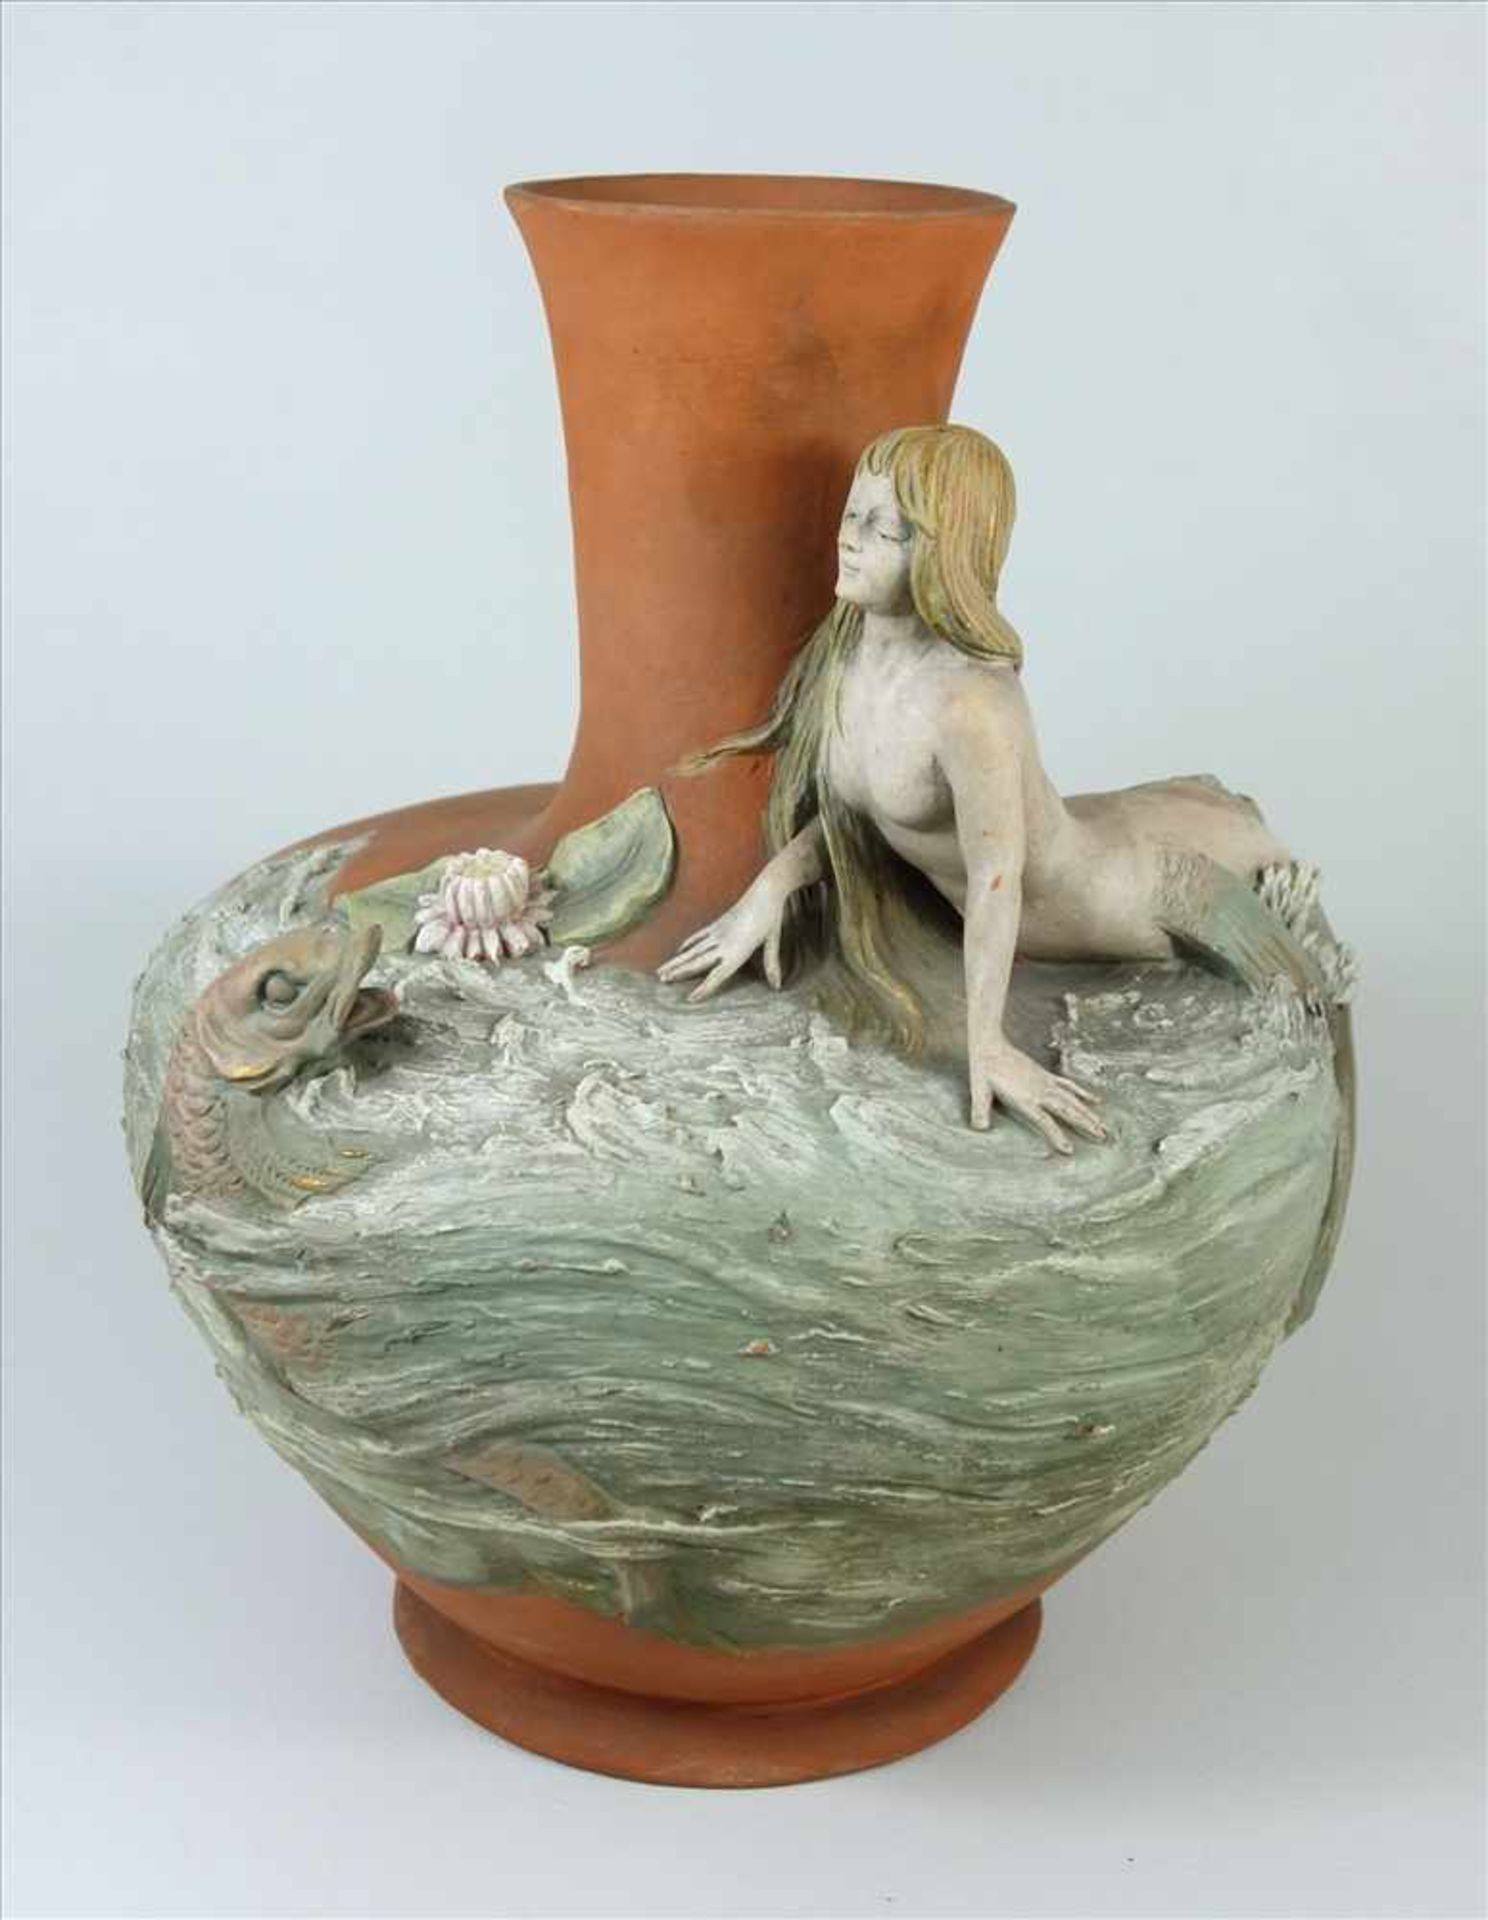 Jugendstil-Vase mit Meerjungfrau und Fisch, um 1890, Terracotta, partiell reliefierter Korpus mit